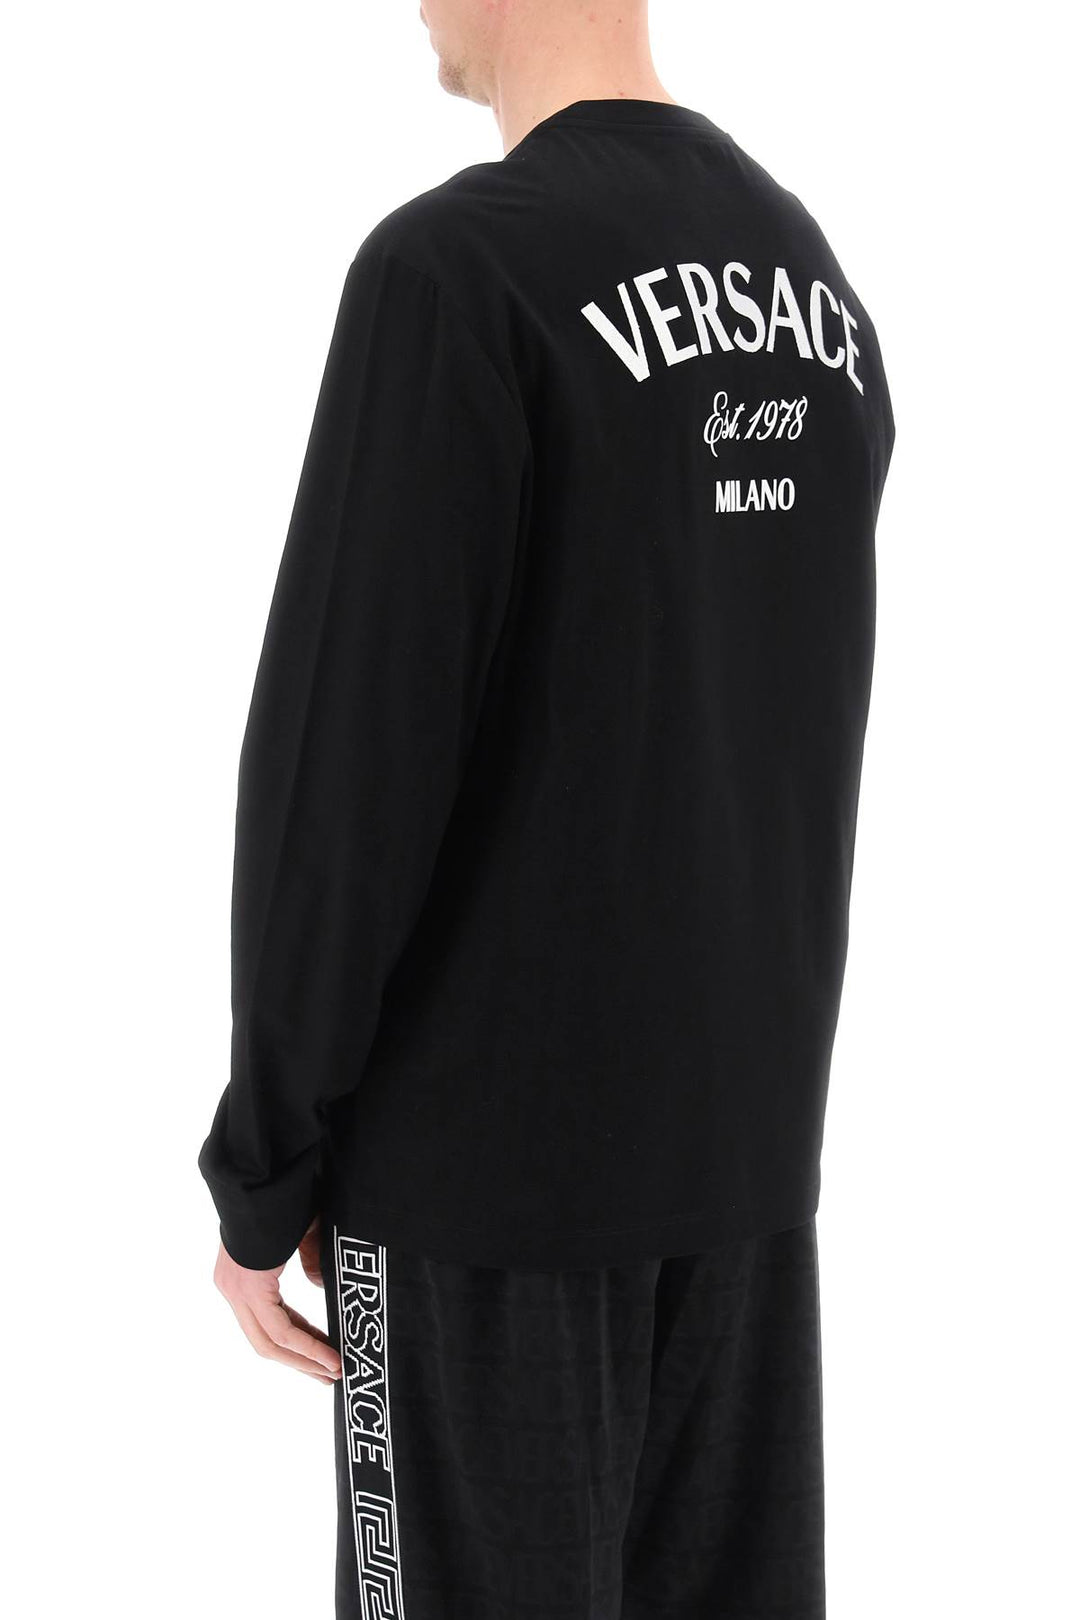 Versace Milano Stamp Long Sleeved T Shirt   Nero